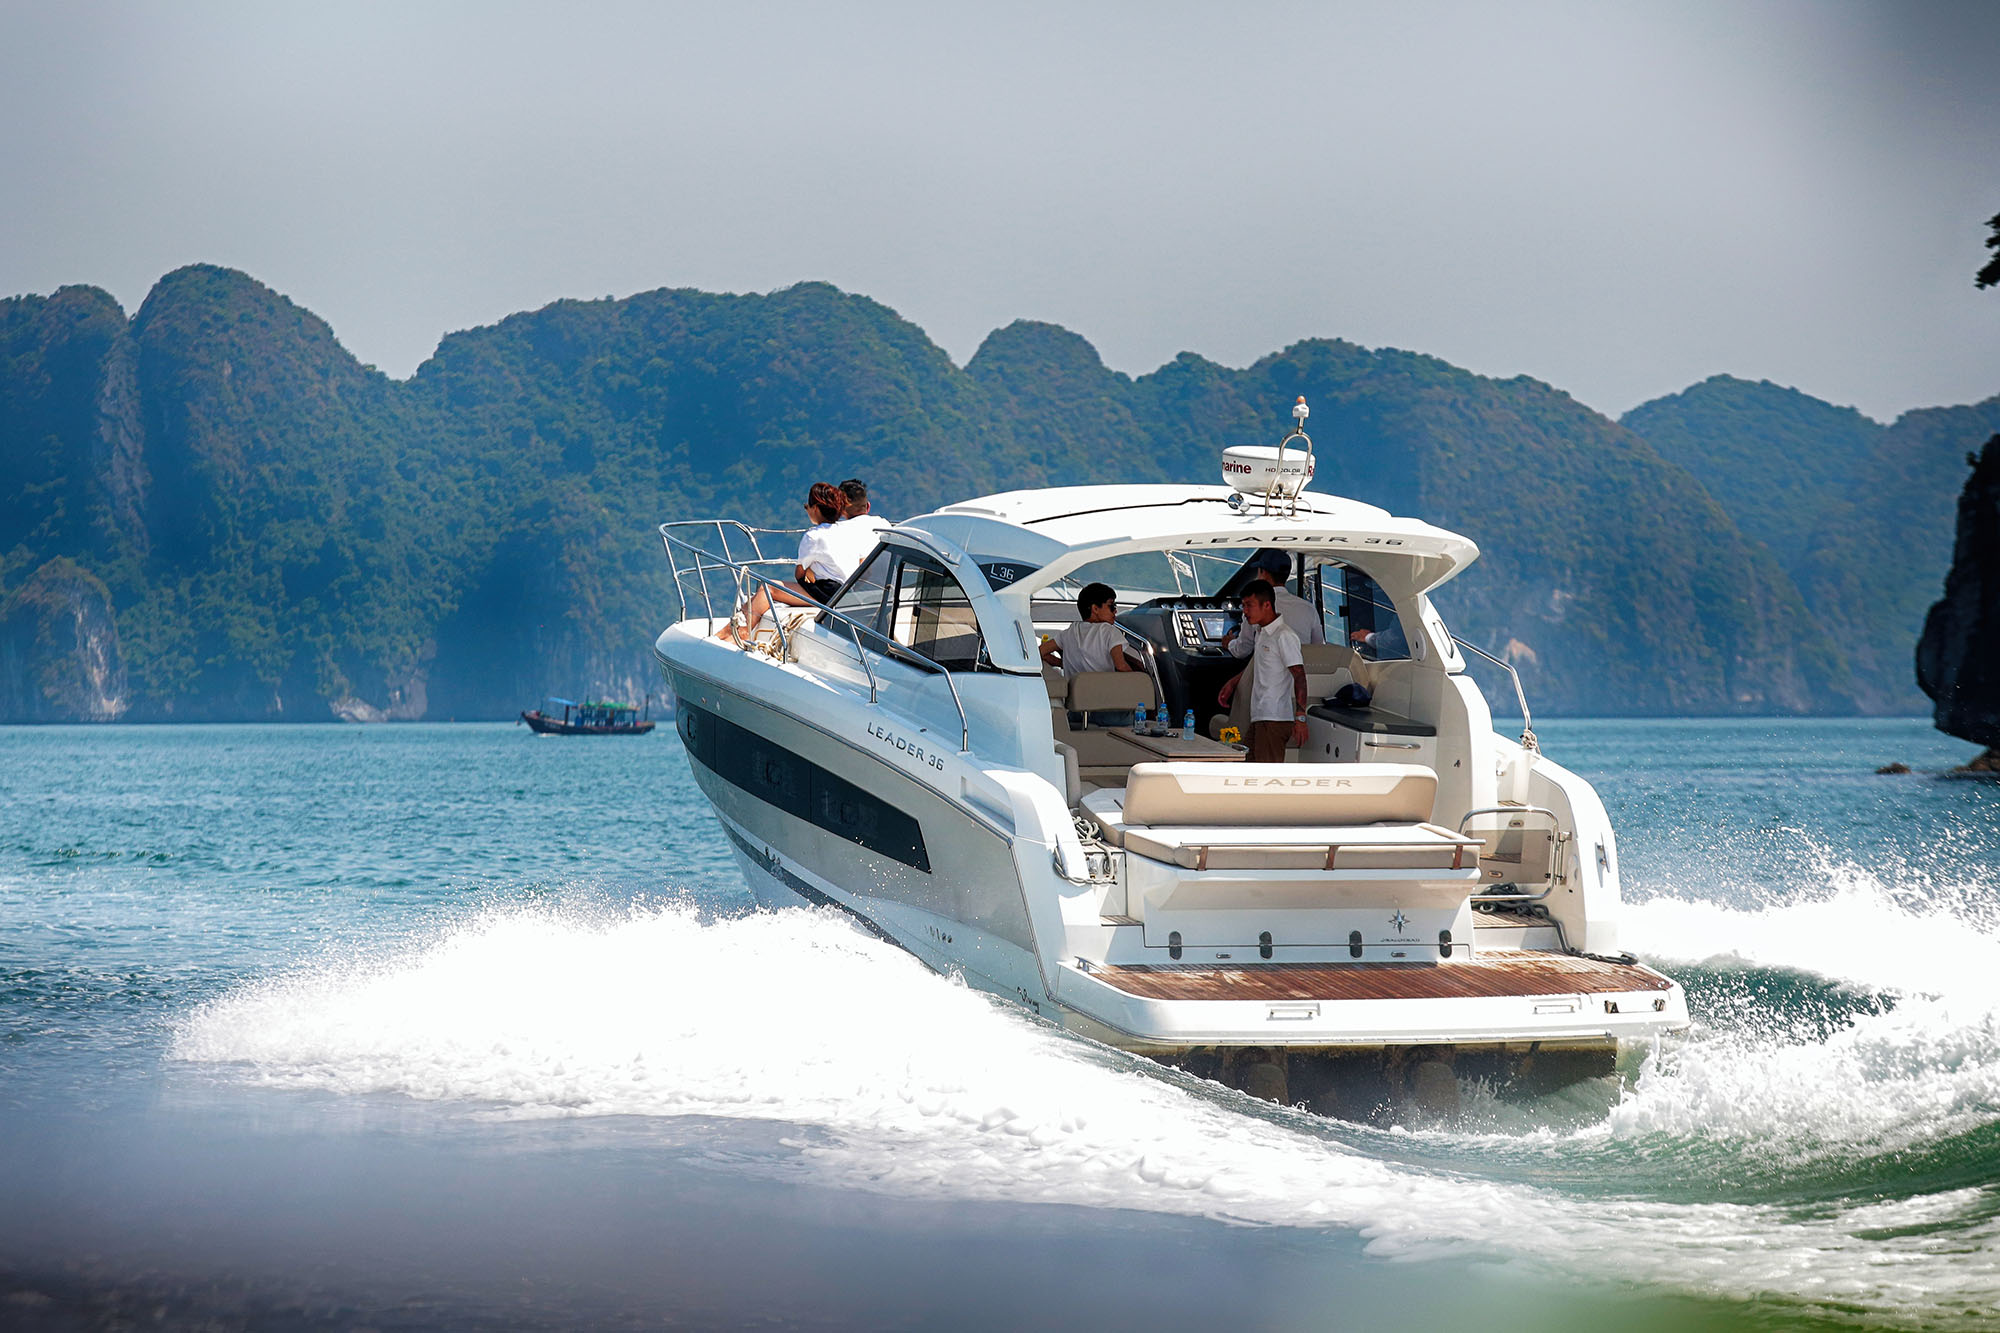 Tham quan Vịnh Hạ Long bằng du thuyền - một sản phẩm du lịch mới.